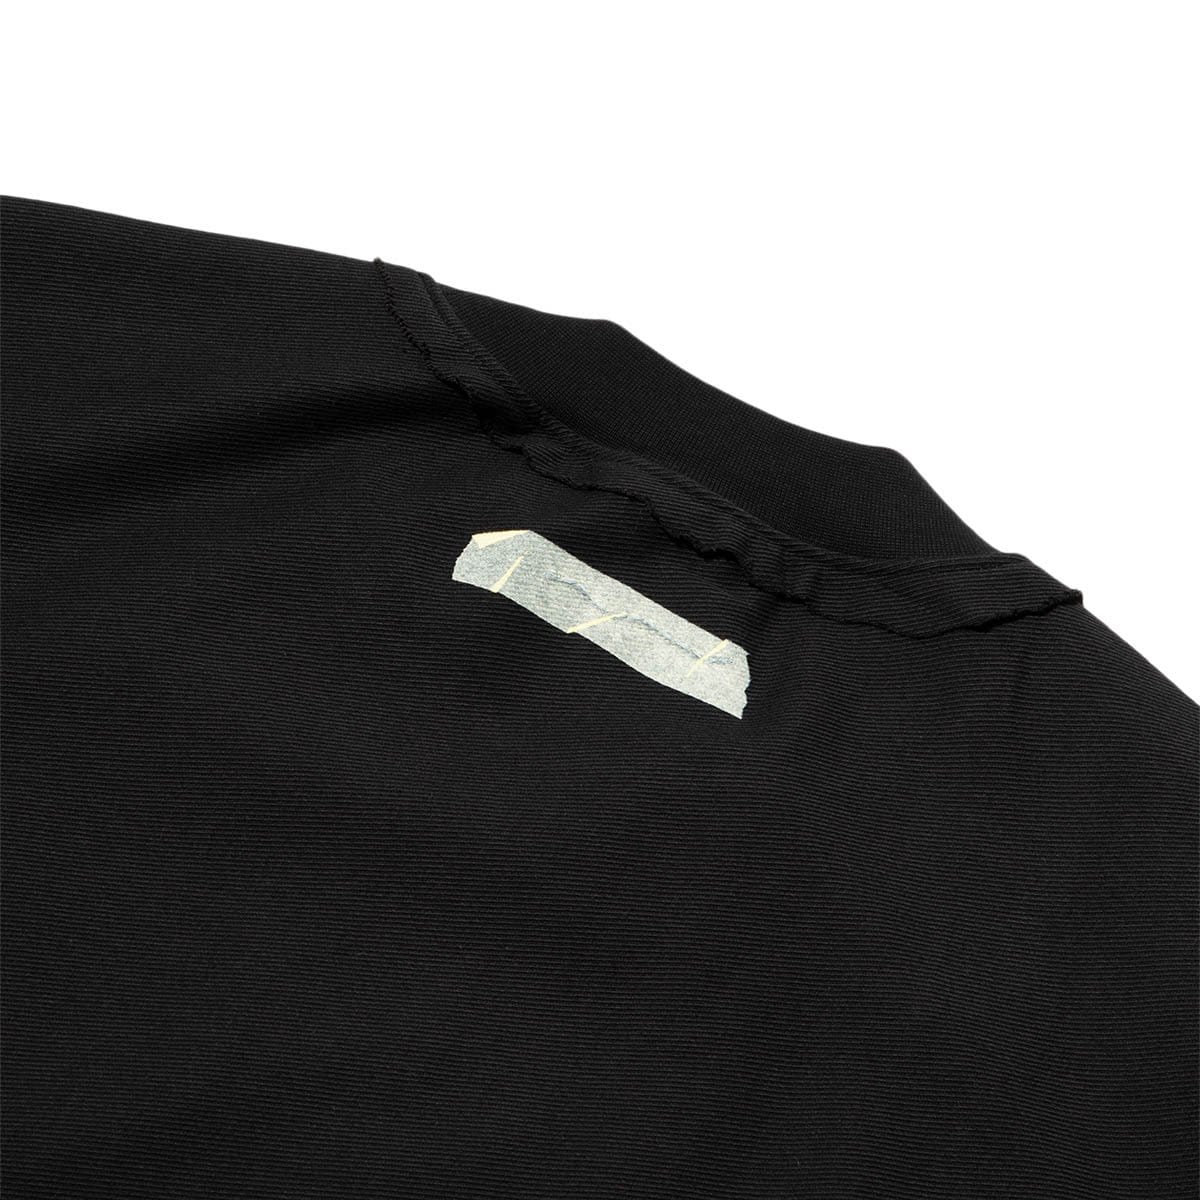 Ader Error Shirts REGULAR FIT LONG-SLEEVE T-SHIRT